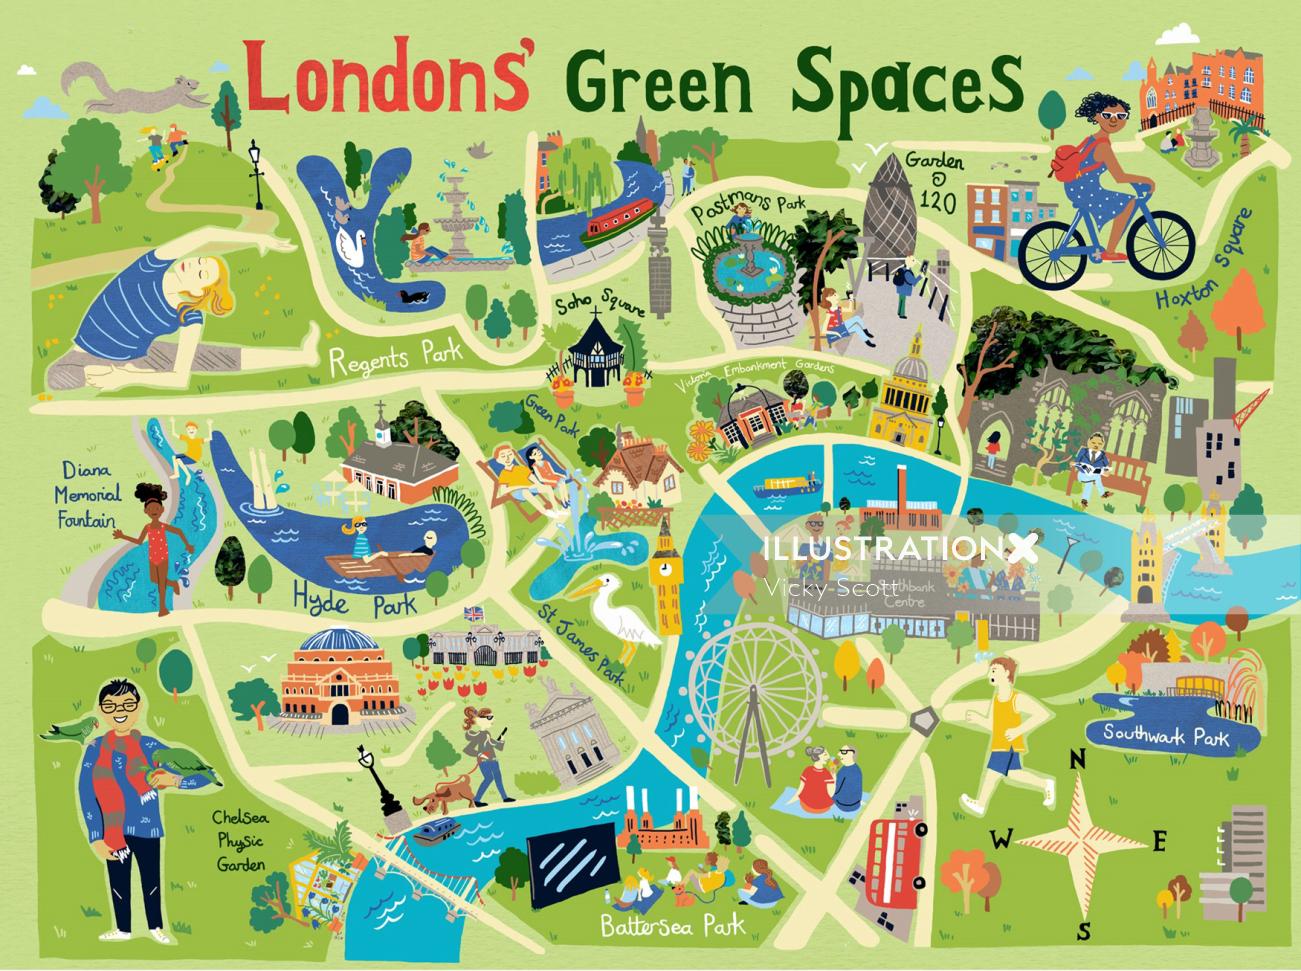 ロンドン中心部の緑地を示す地図